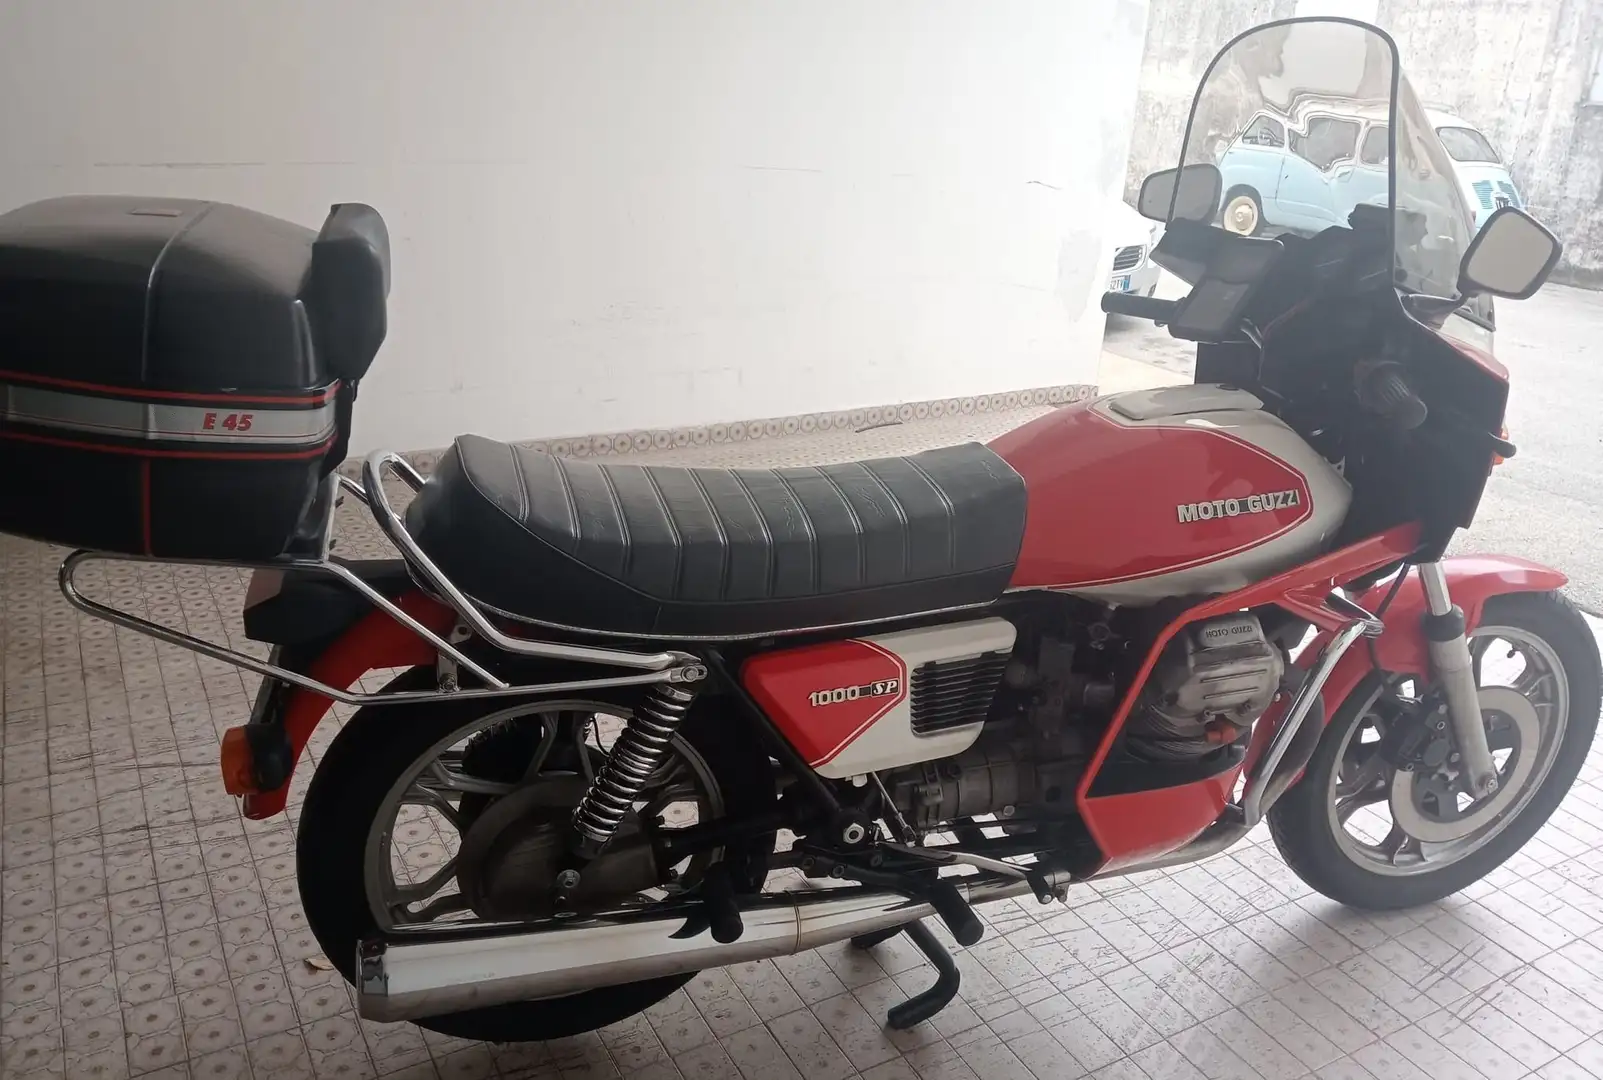 Moto Guzzi 1000 SP Red - 2